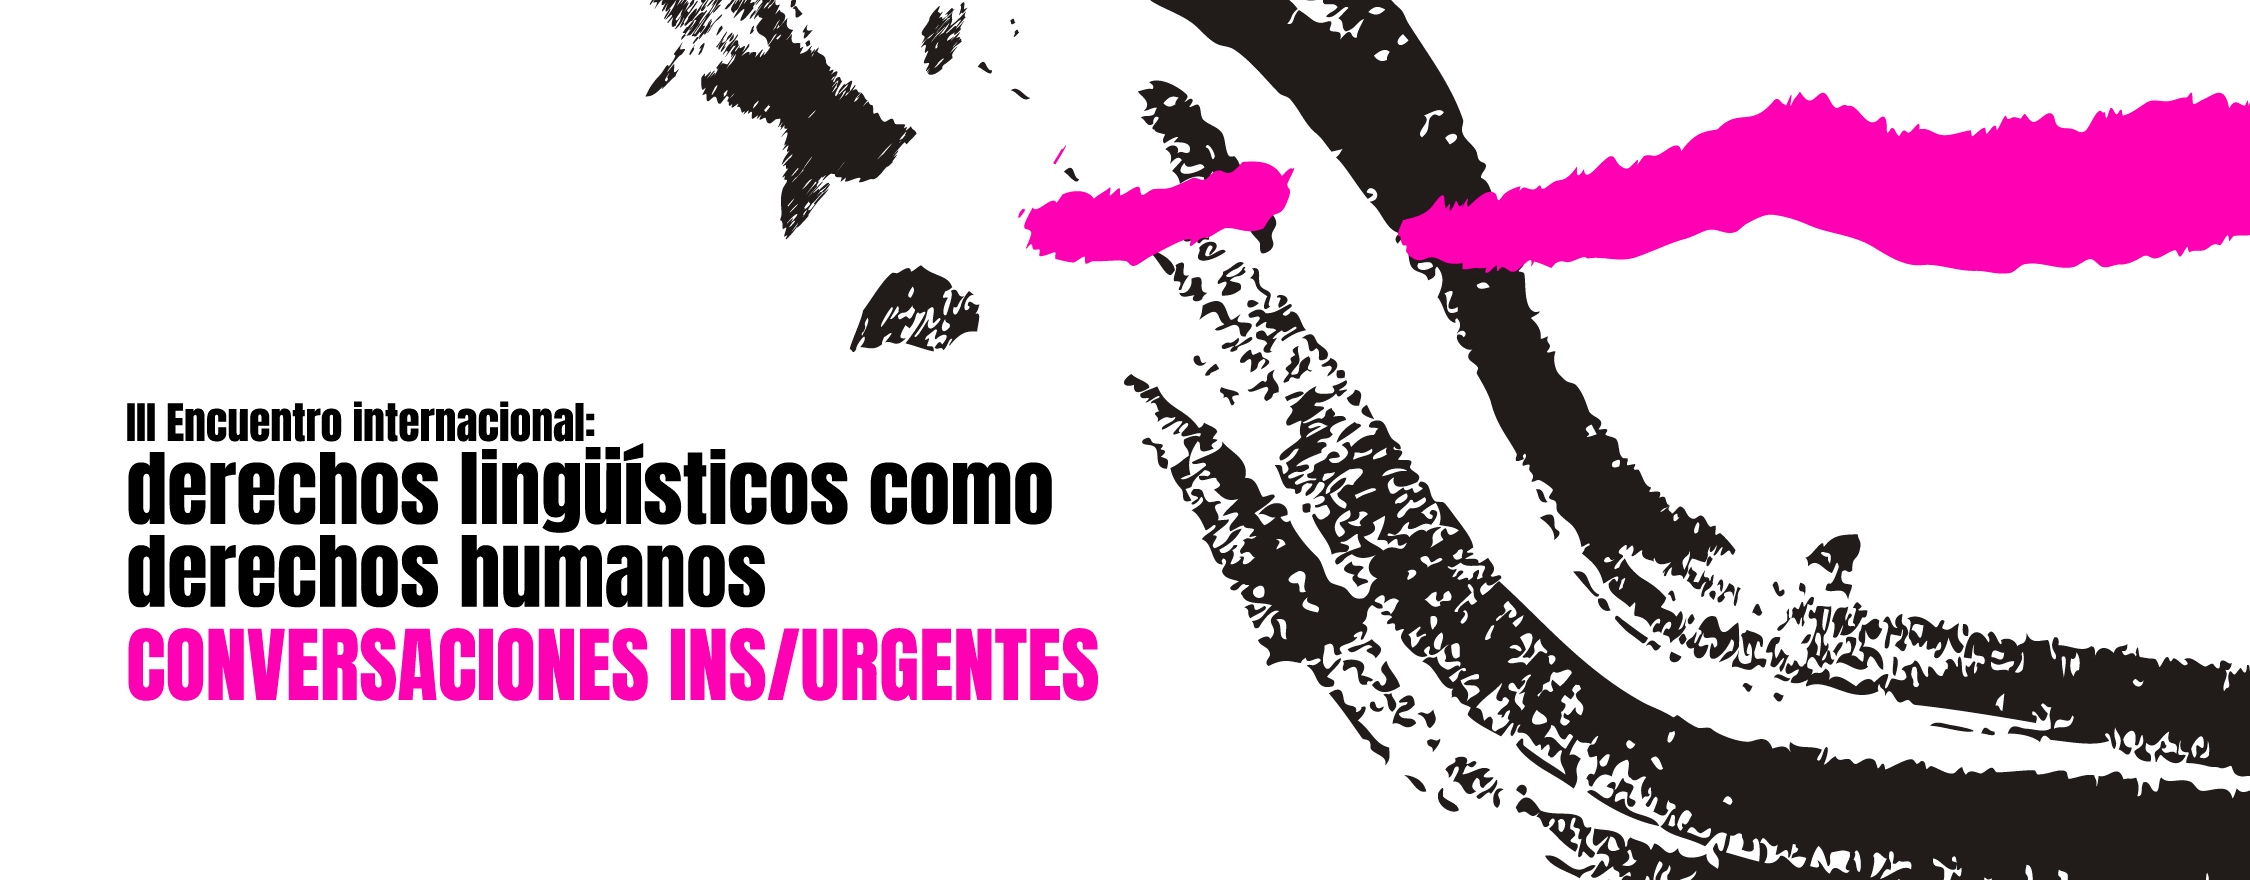 III Encuentro Internacional: derechos lingüísticos como derechos humanos en Latinoamérica / CONVERSACIONES IN/SURGENTES